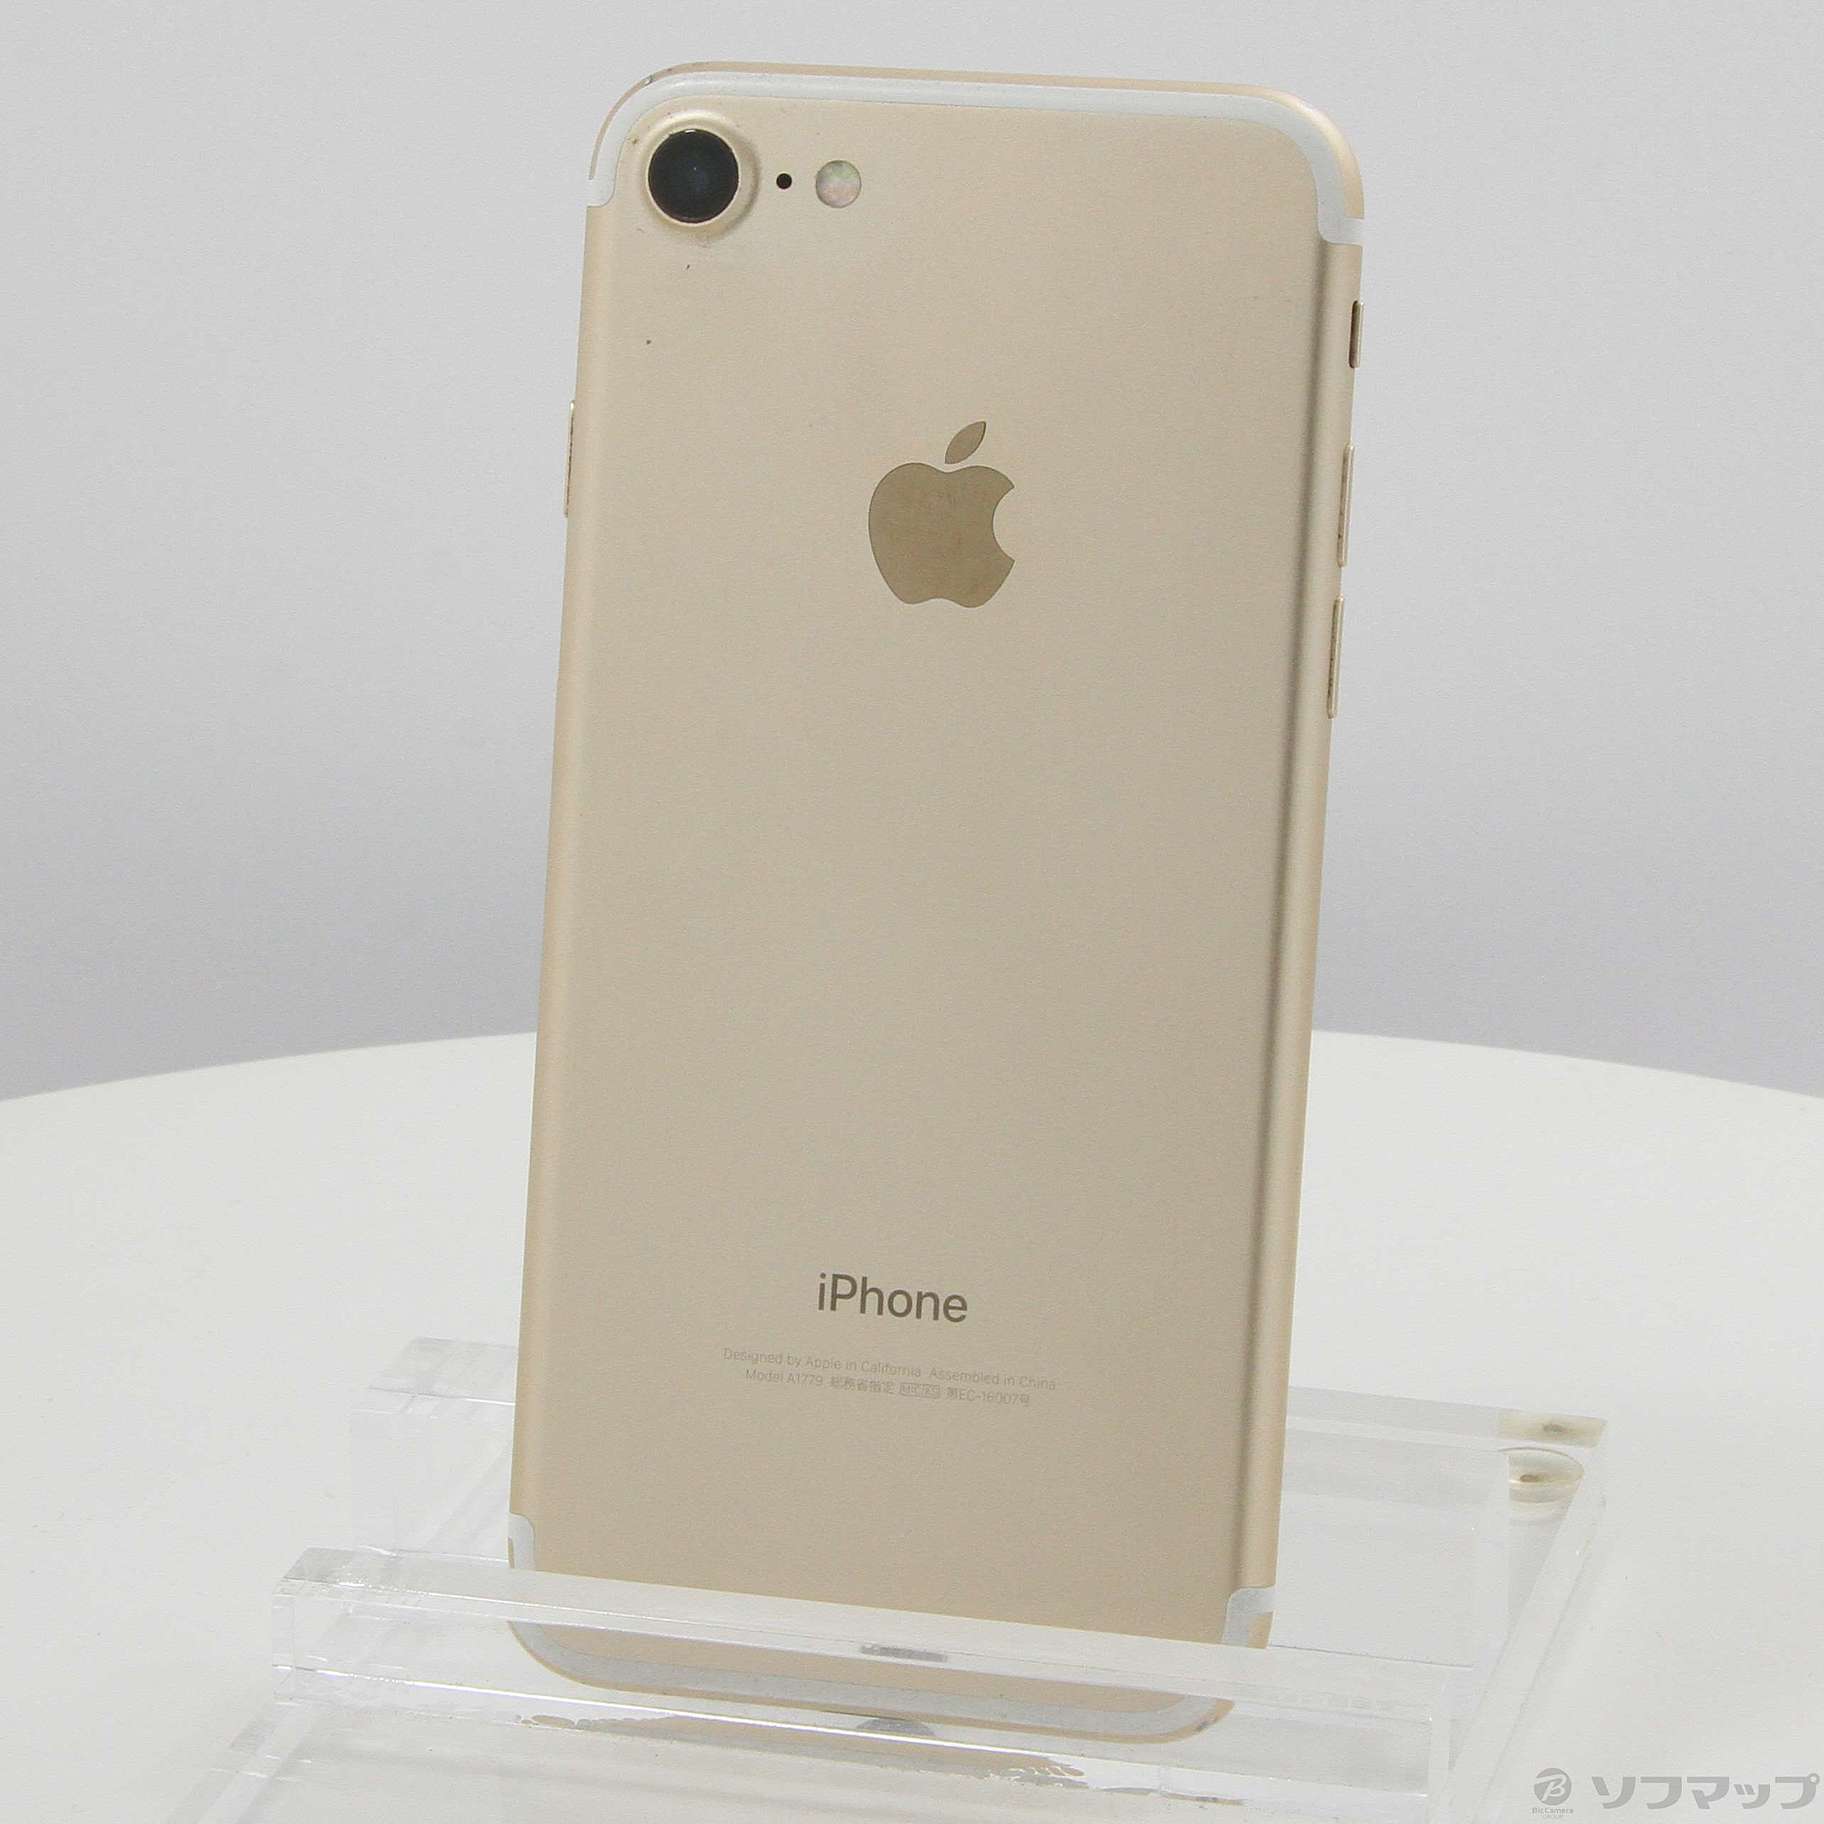 リバーシブルタイプ iPhone7 128GB ゴールド GOLD softbank ...